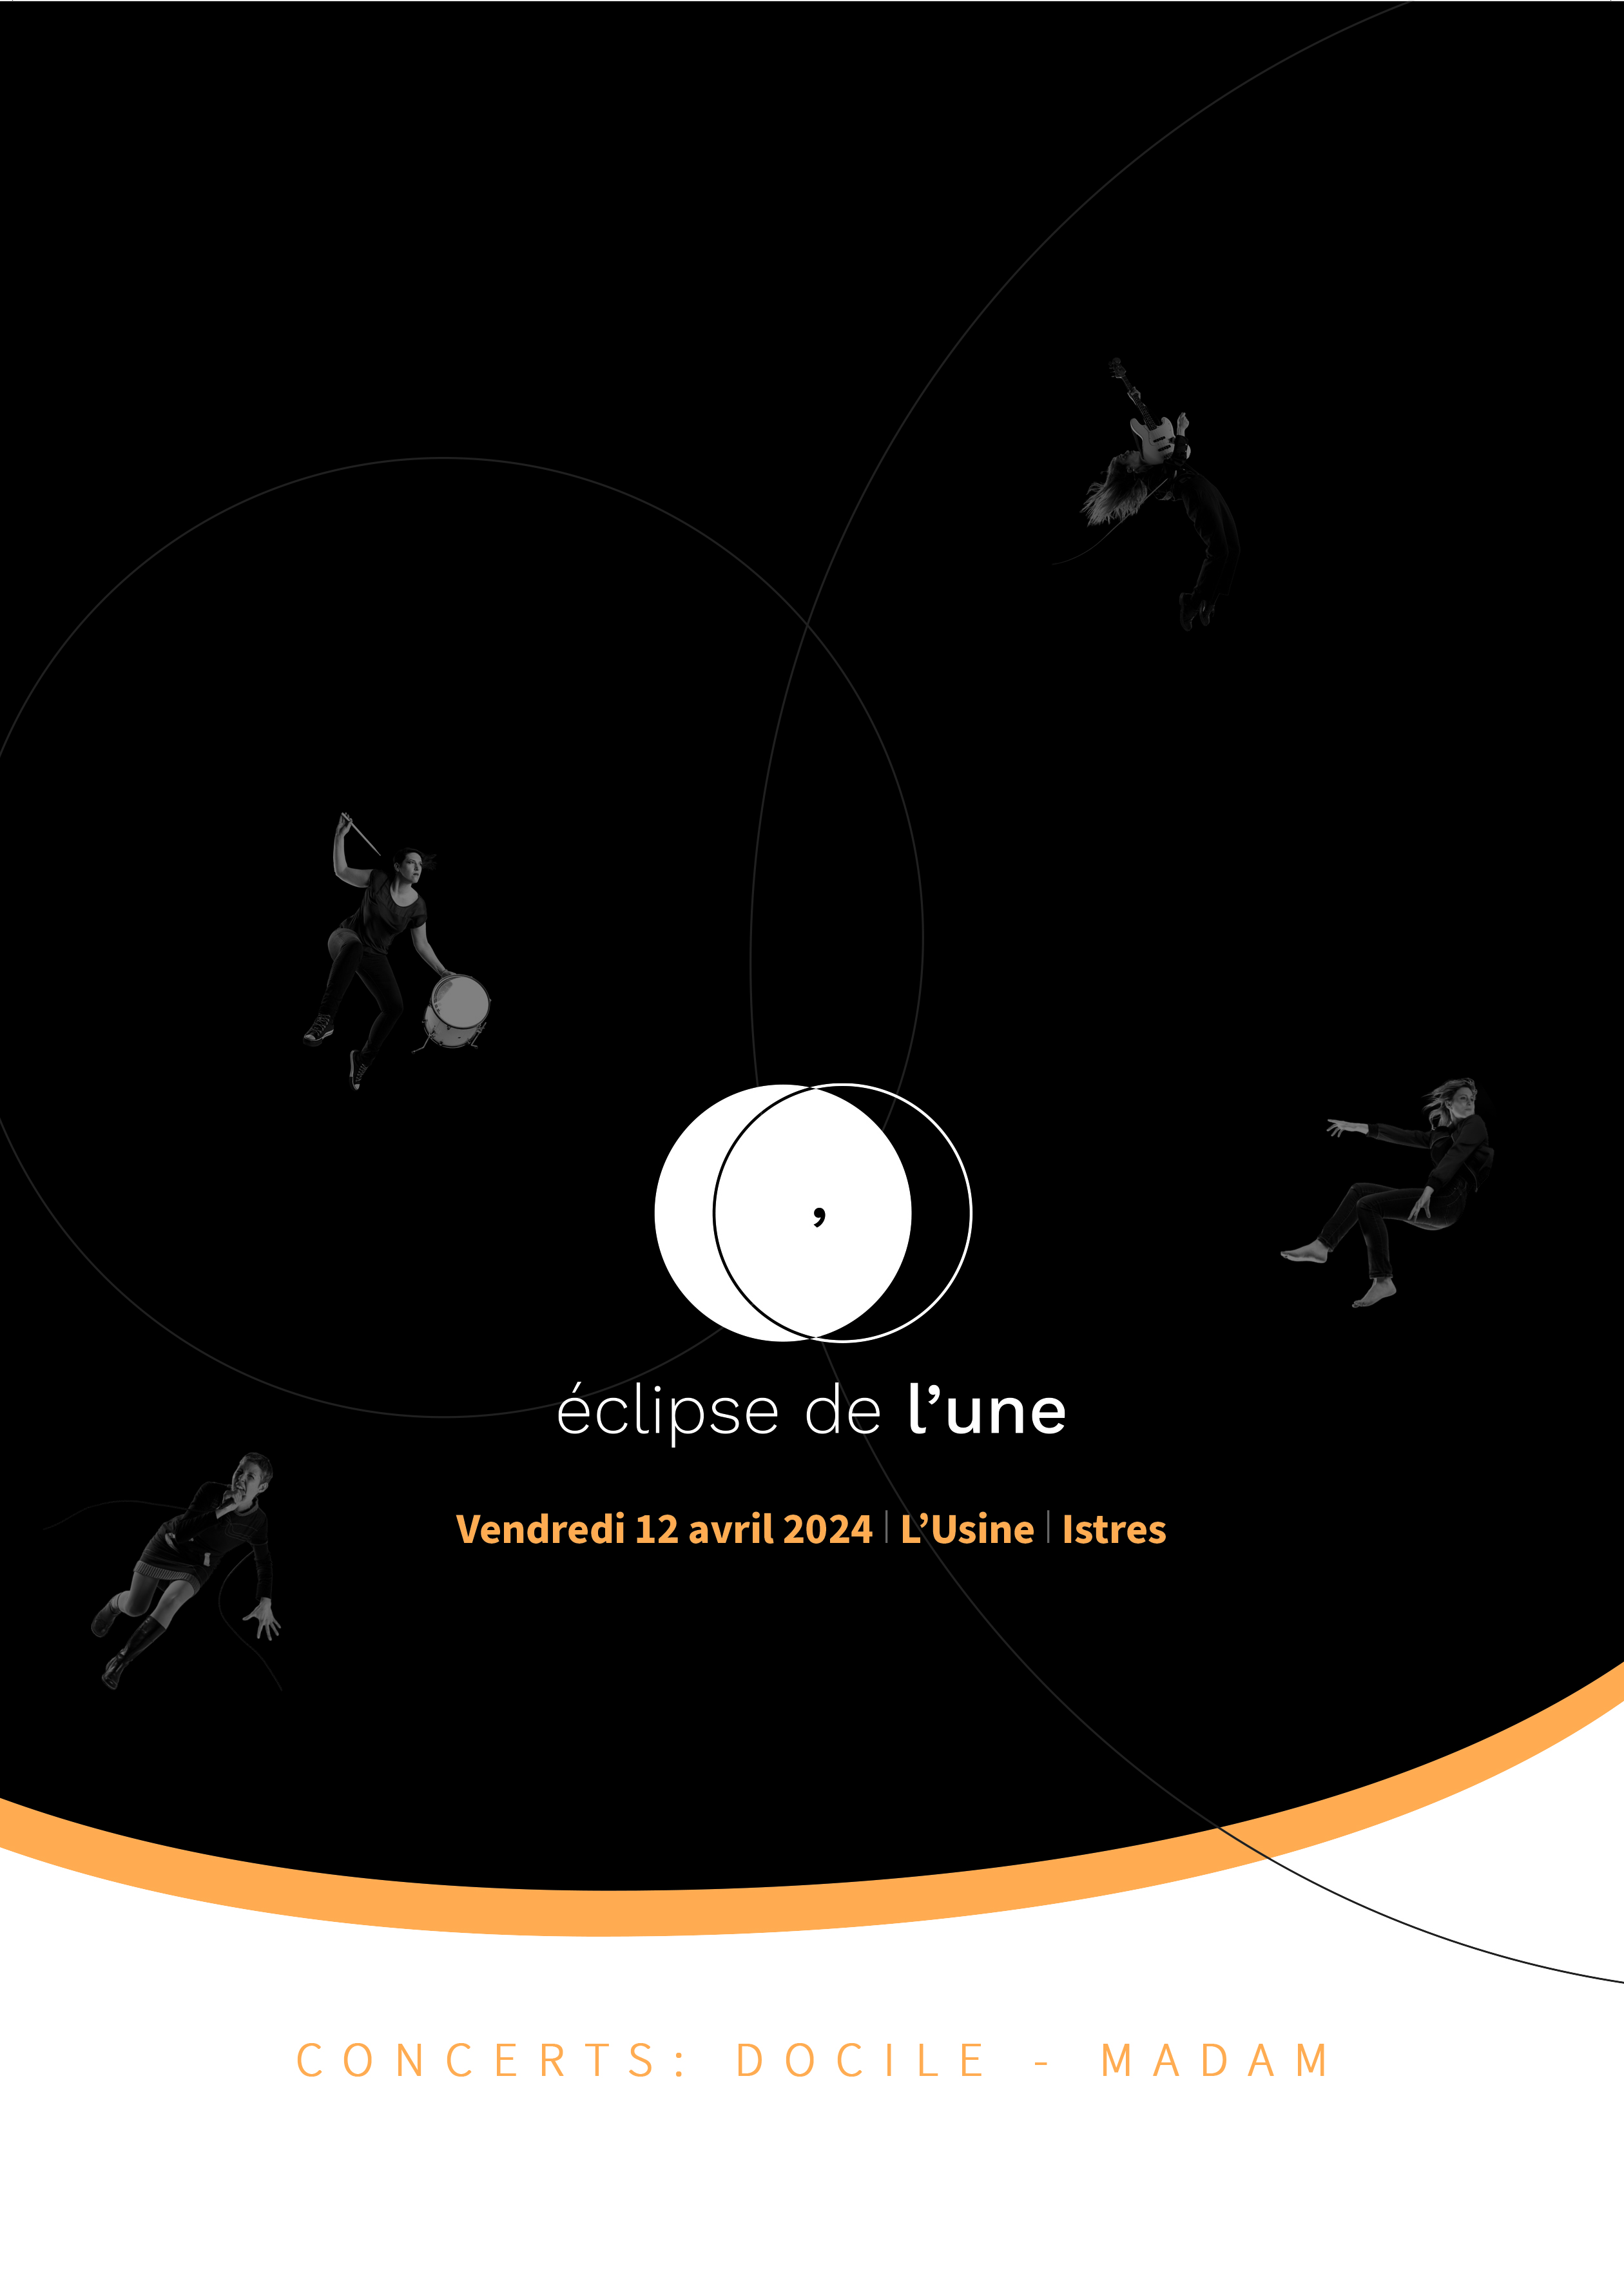 Eclipse de Lune à Istres vendredi 12/04 à l'espace culturel L'Usine : une exposition interactive pour mettre en lumière les femmes dans le milieu artistique